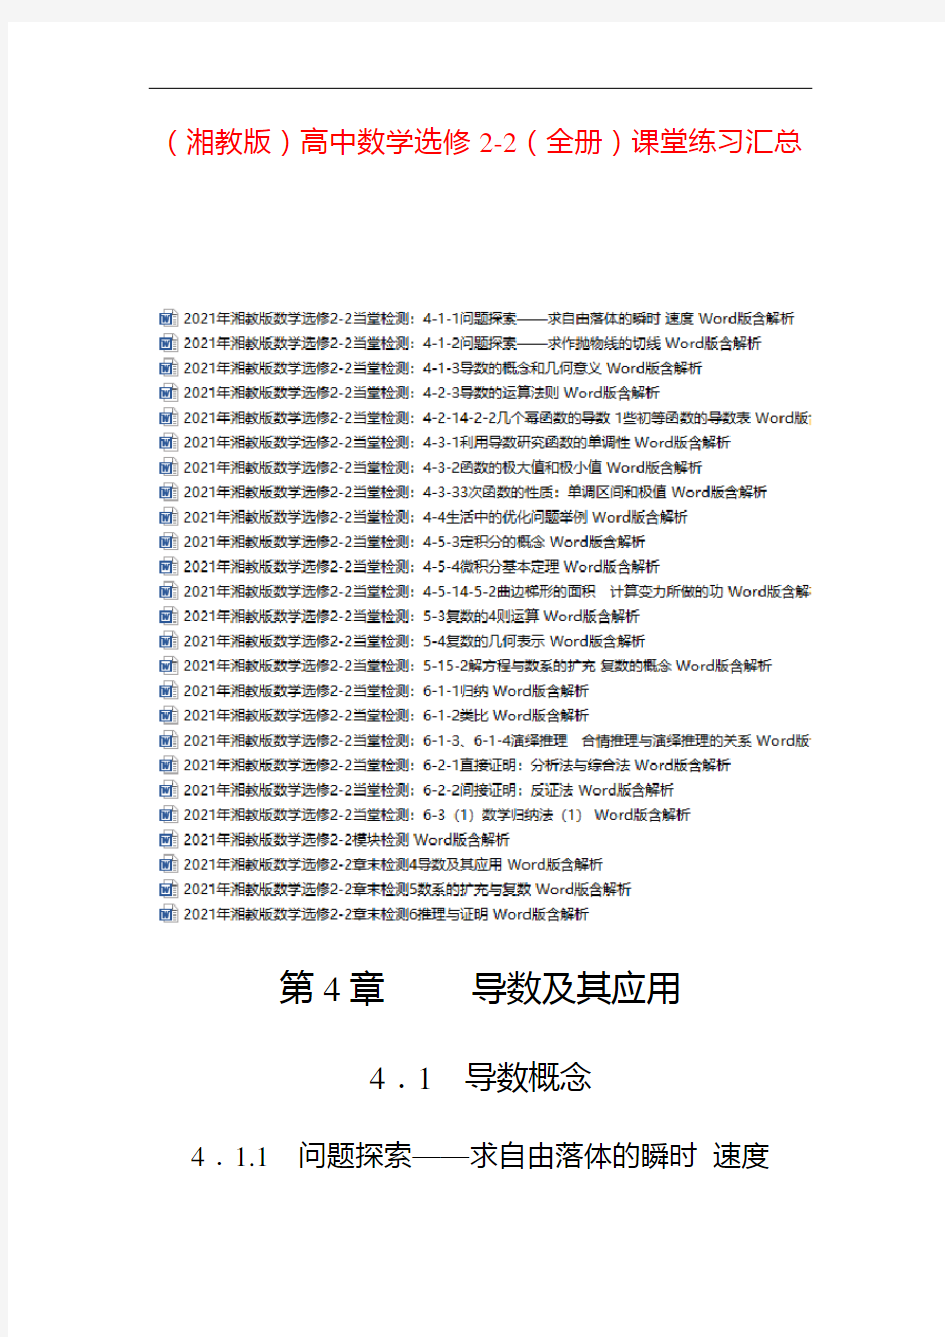 【湘教版】2021年高中数学选修2-2(全书)课堂练习全集 (史上最全版)